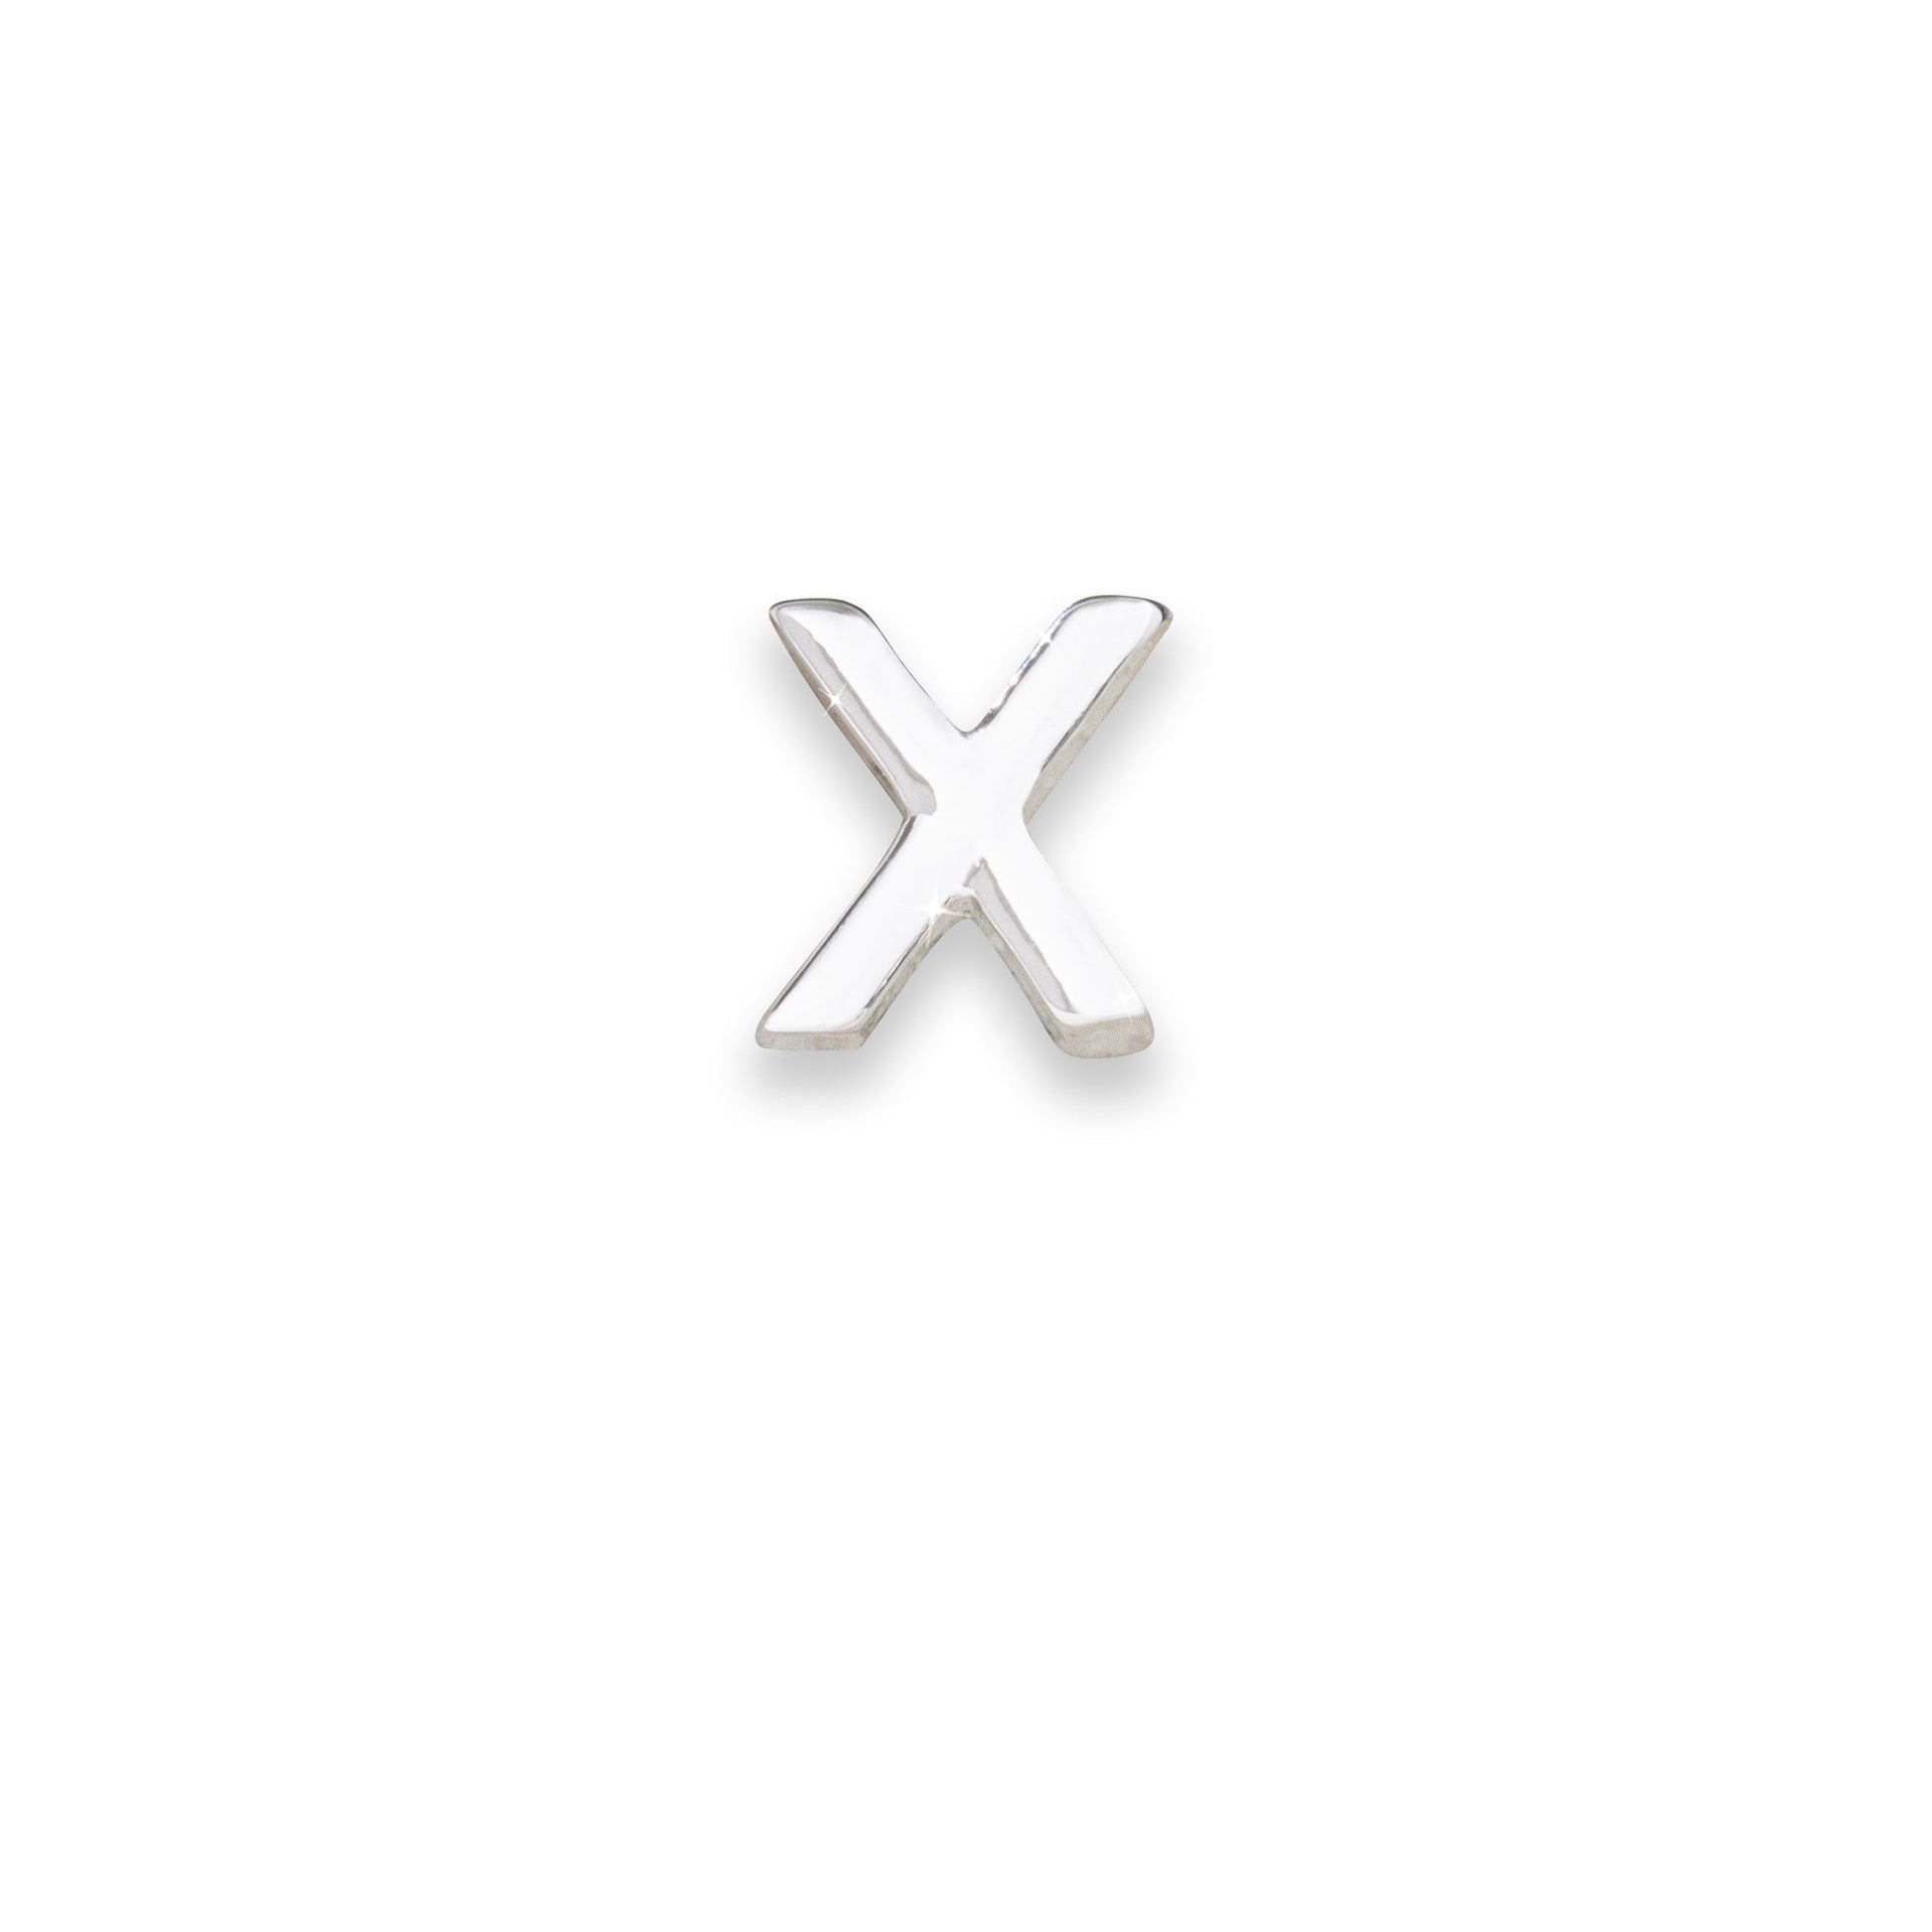 Silver letter X monogram charm for necklaces & bracelets